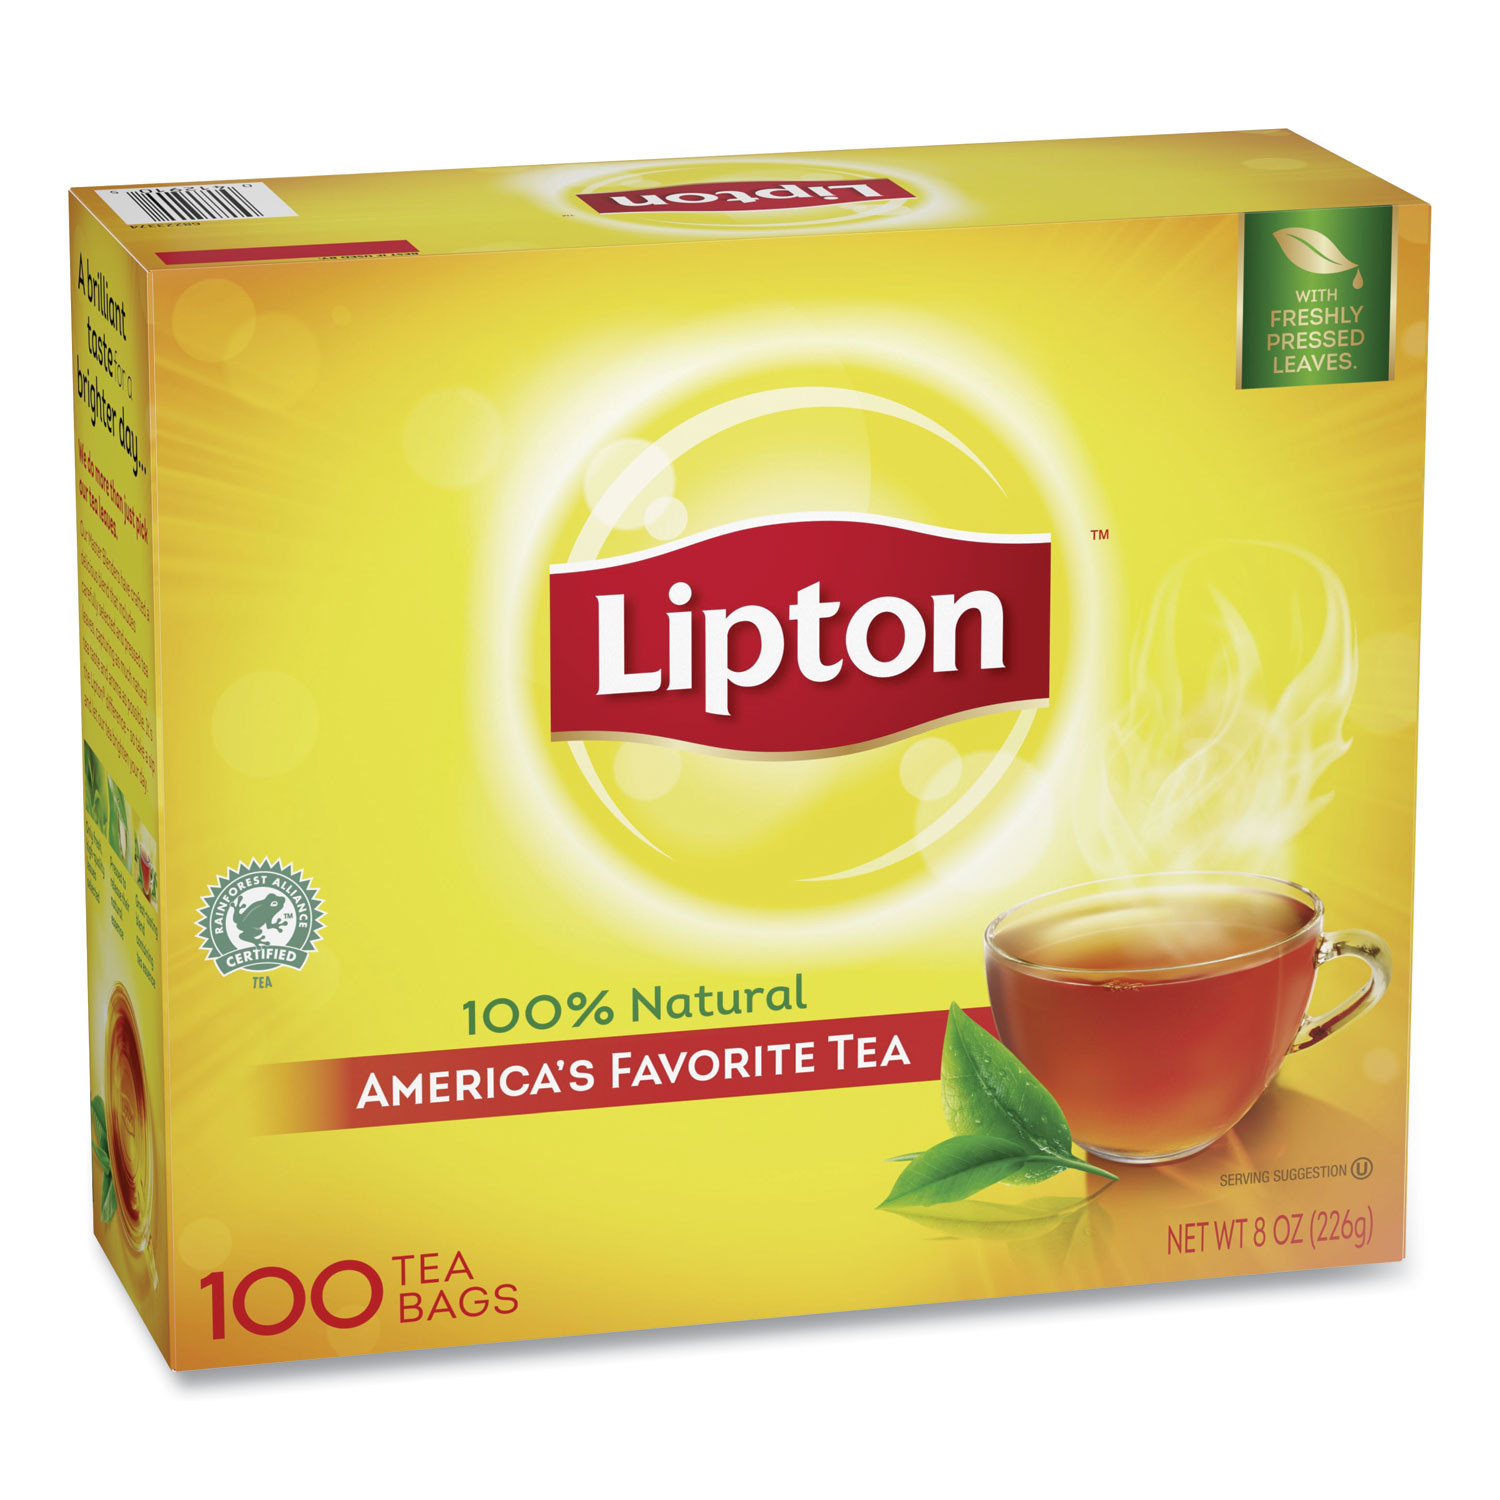 Lipton Tea Bags Black Flavor 100 Bags Per Box